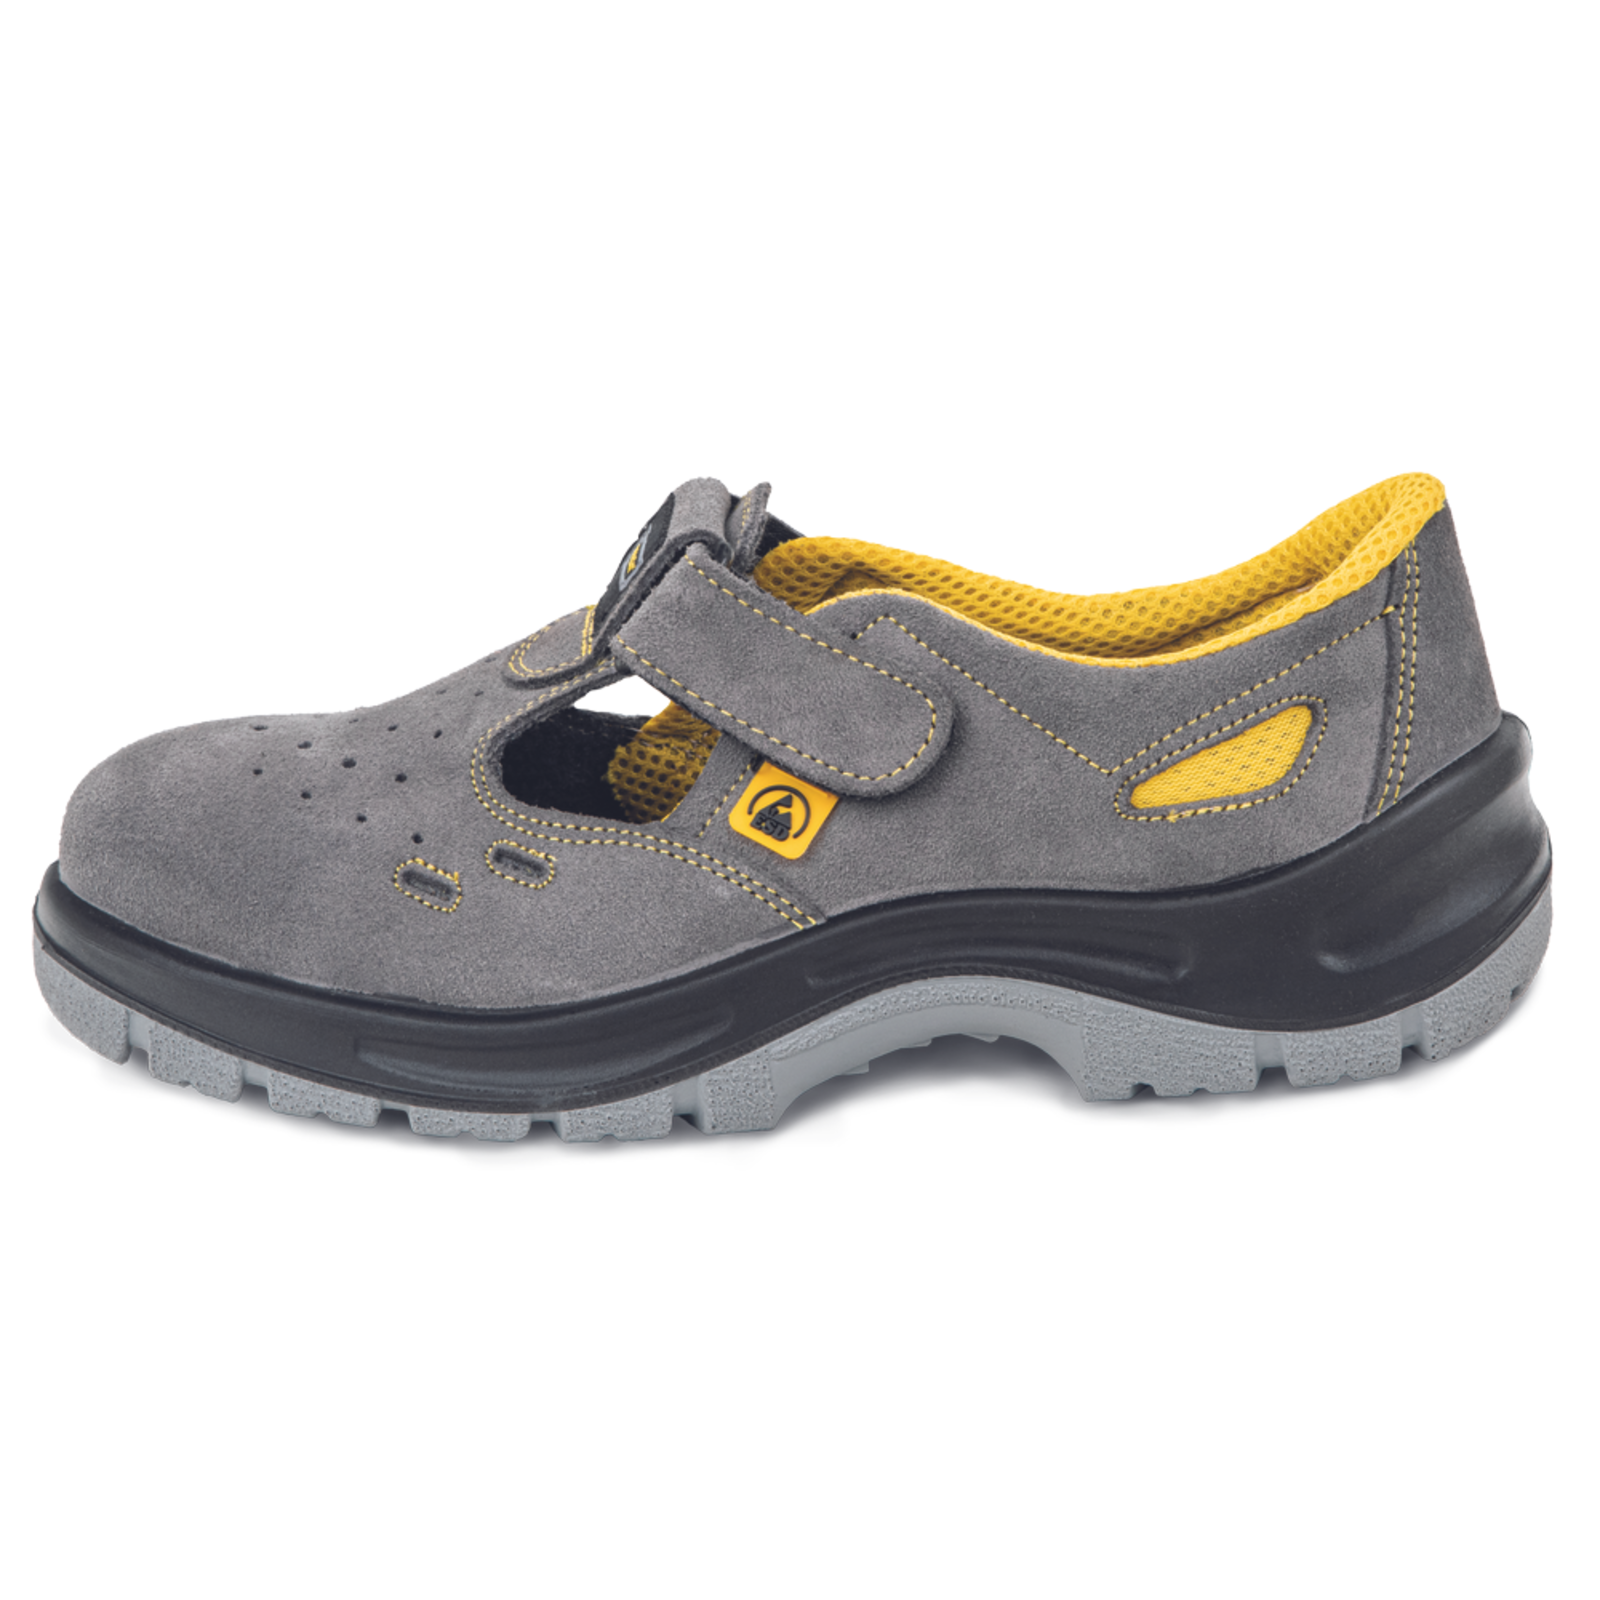 Pracovné bezpečnostné sandále Panda Selma MF ESD S1P SRC - veľkosť: 44, farba: sivá/žltá